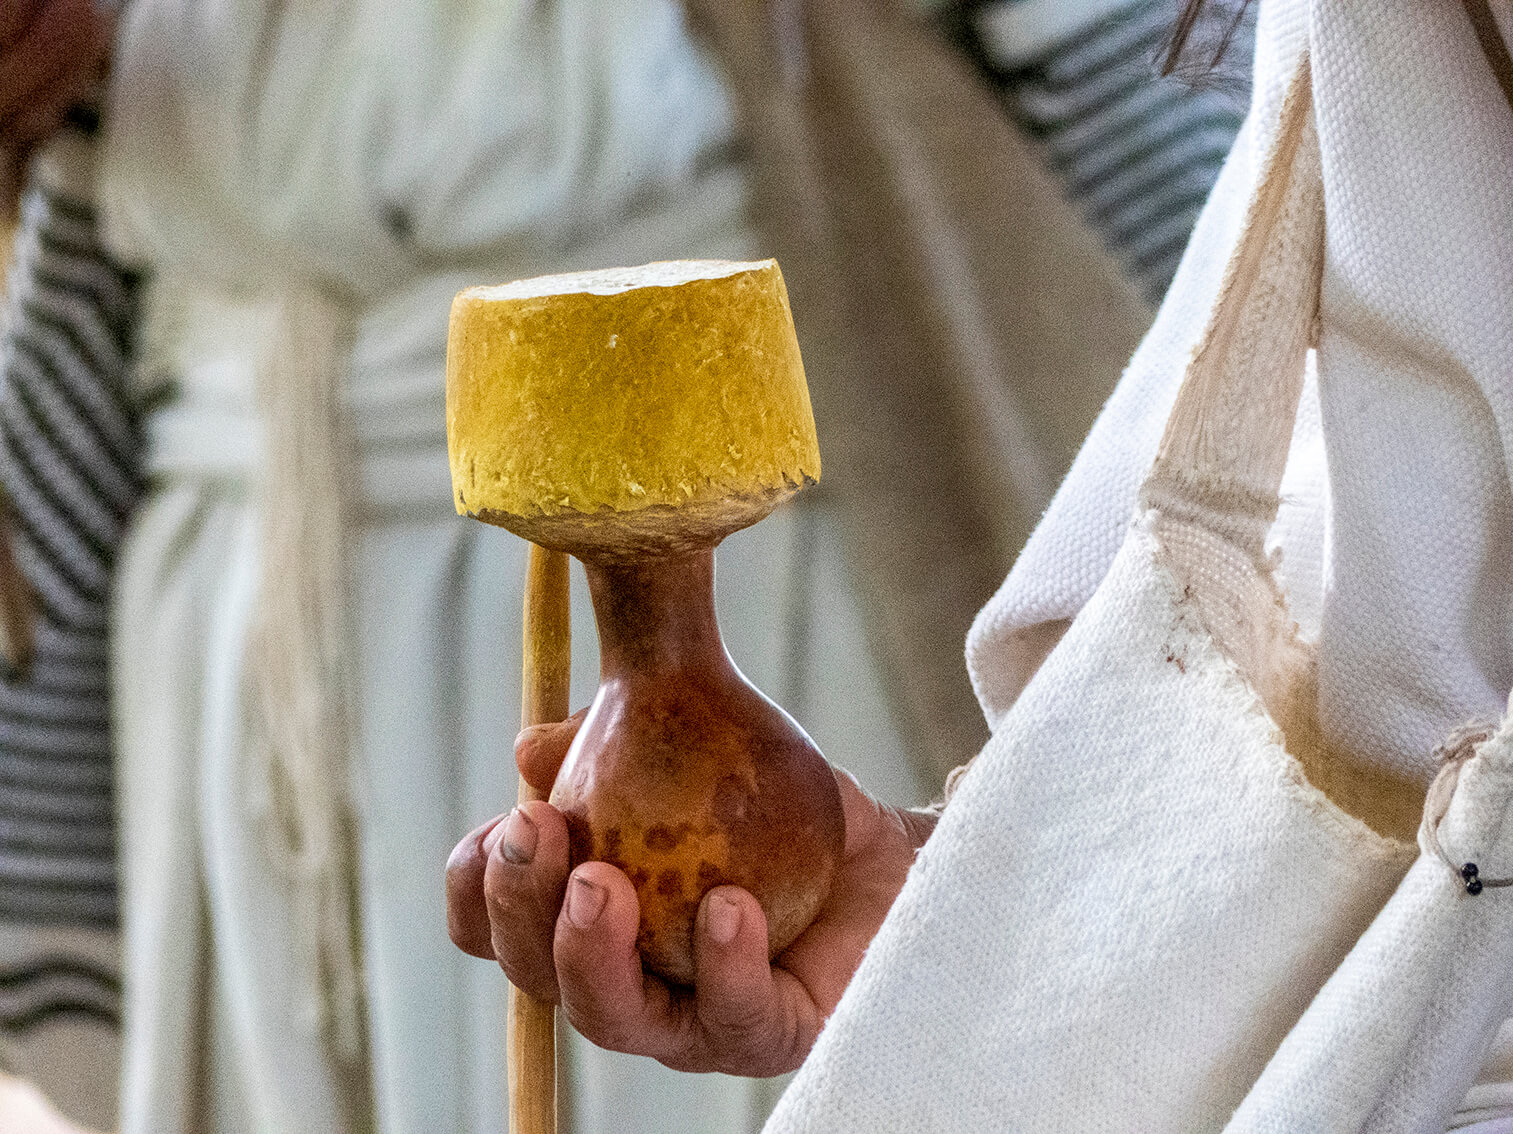 Un hombre arhuaco sostiene el calabazo de un poporo en su mano derecha y entre sus dedos lleva el madero con el que mambea.